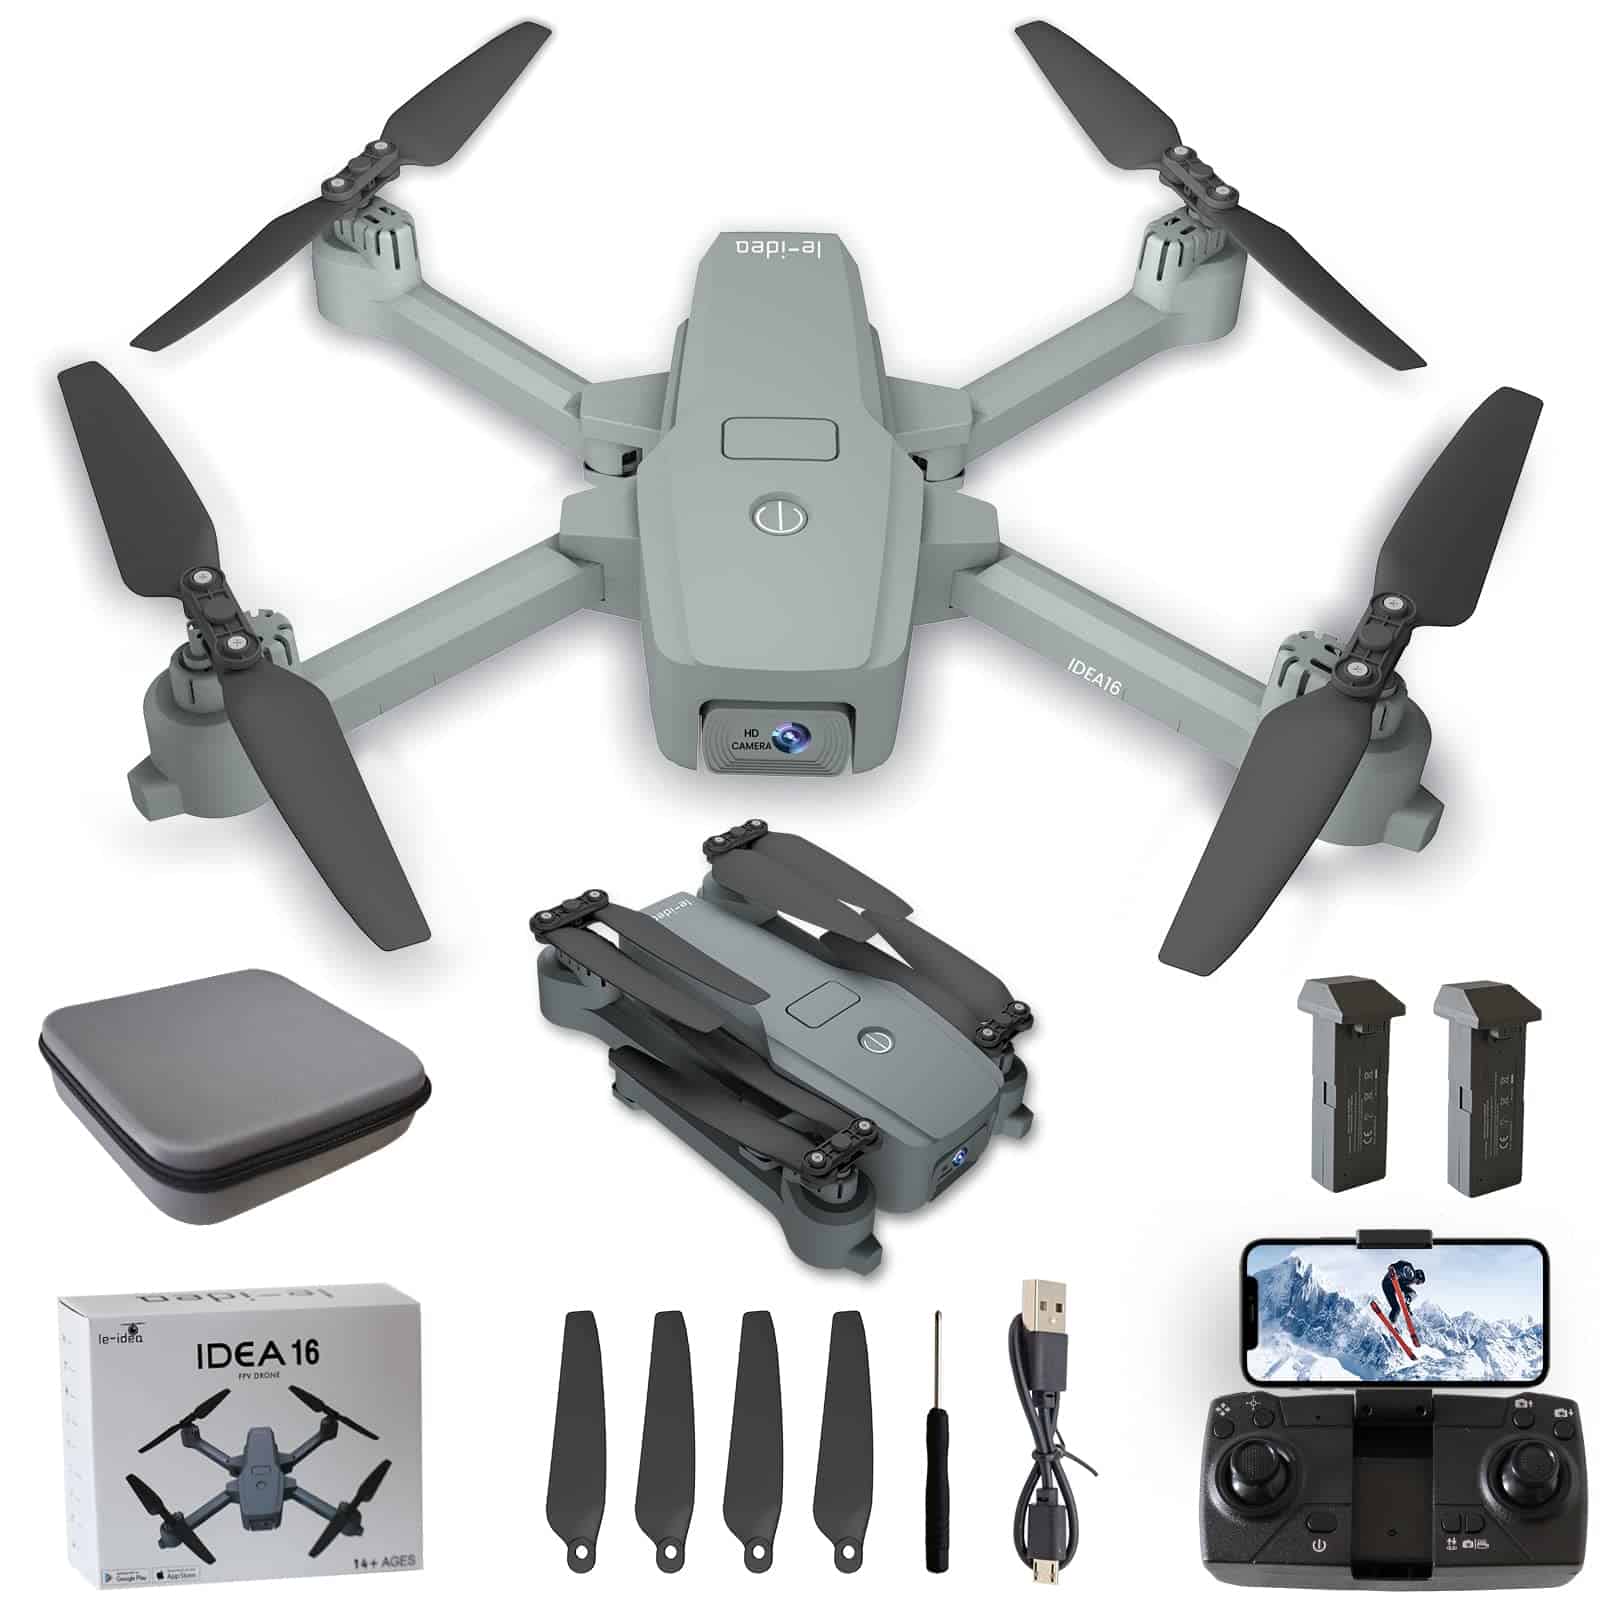 IDEA16 drone con cámara HD » Drones Baratos Ya!